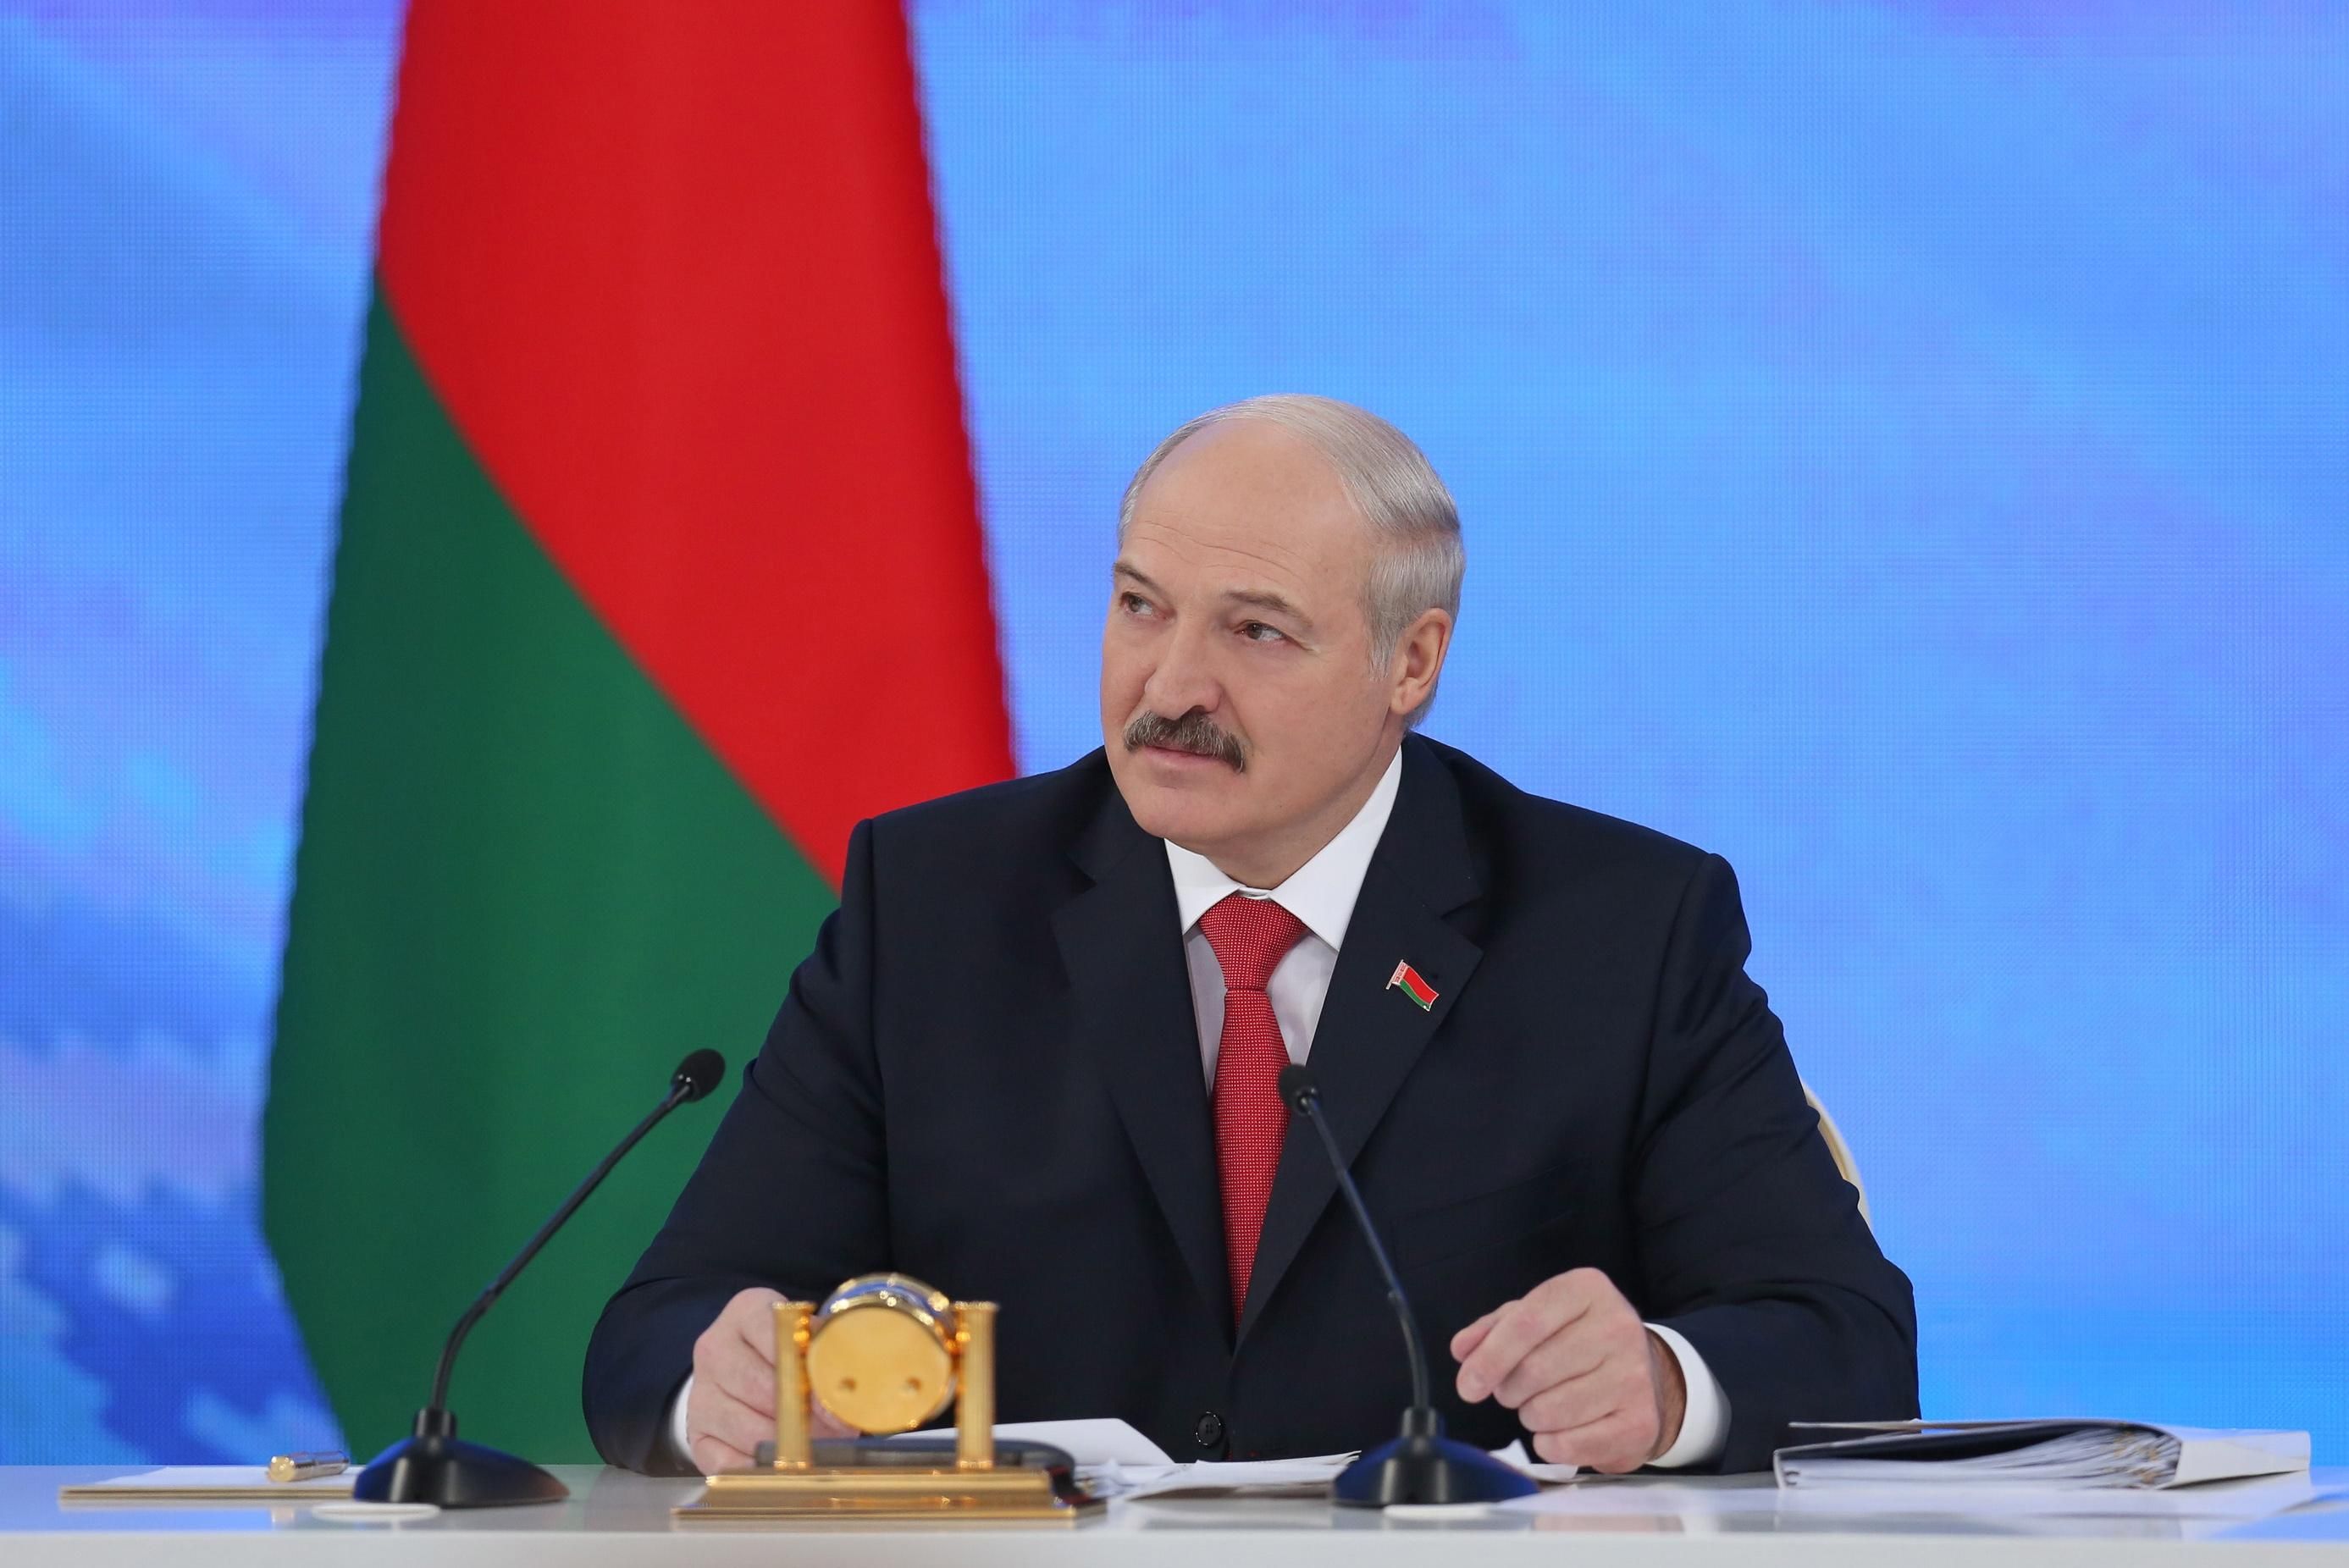 Александр Лукашенко – биография и личная жизнь президента Беларуси